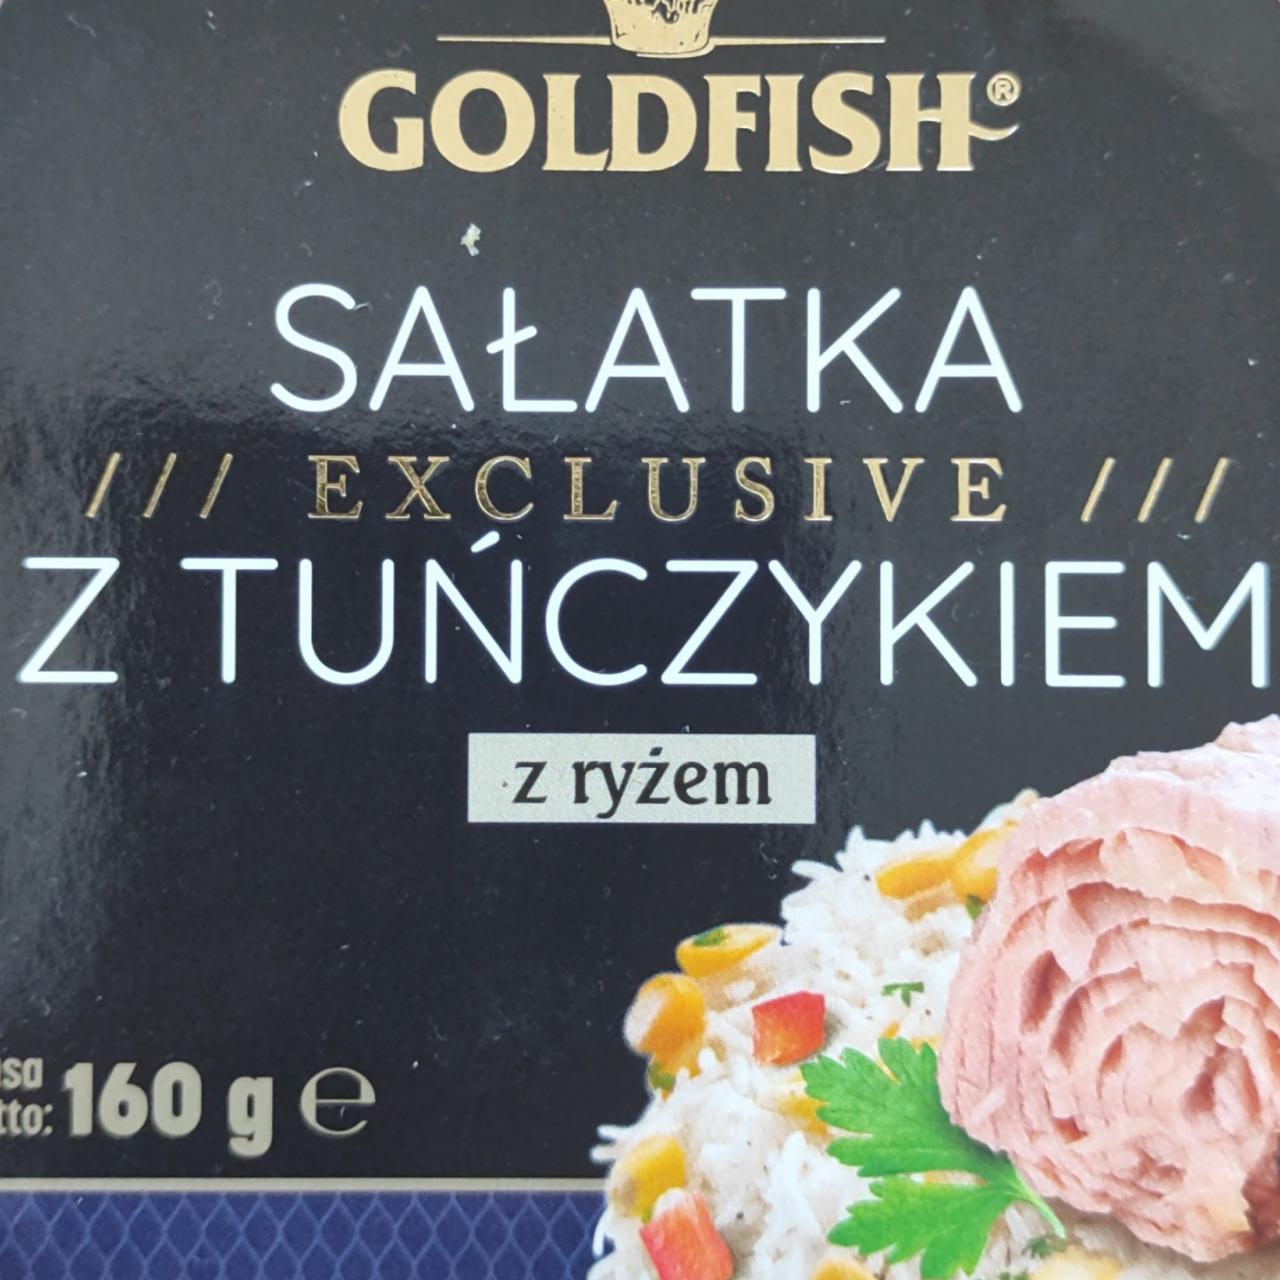 Zdjęcia - Sałatka z tuńczykiem i ryżem GoldFish